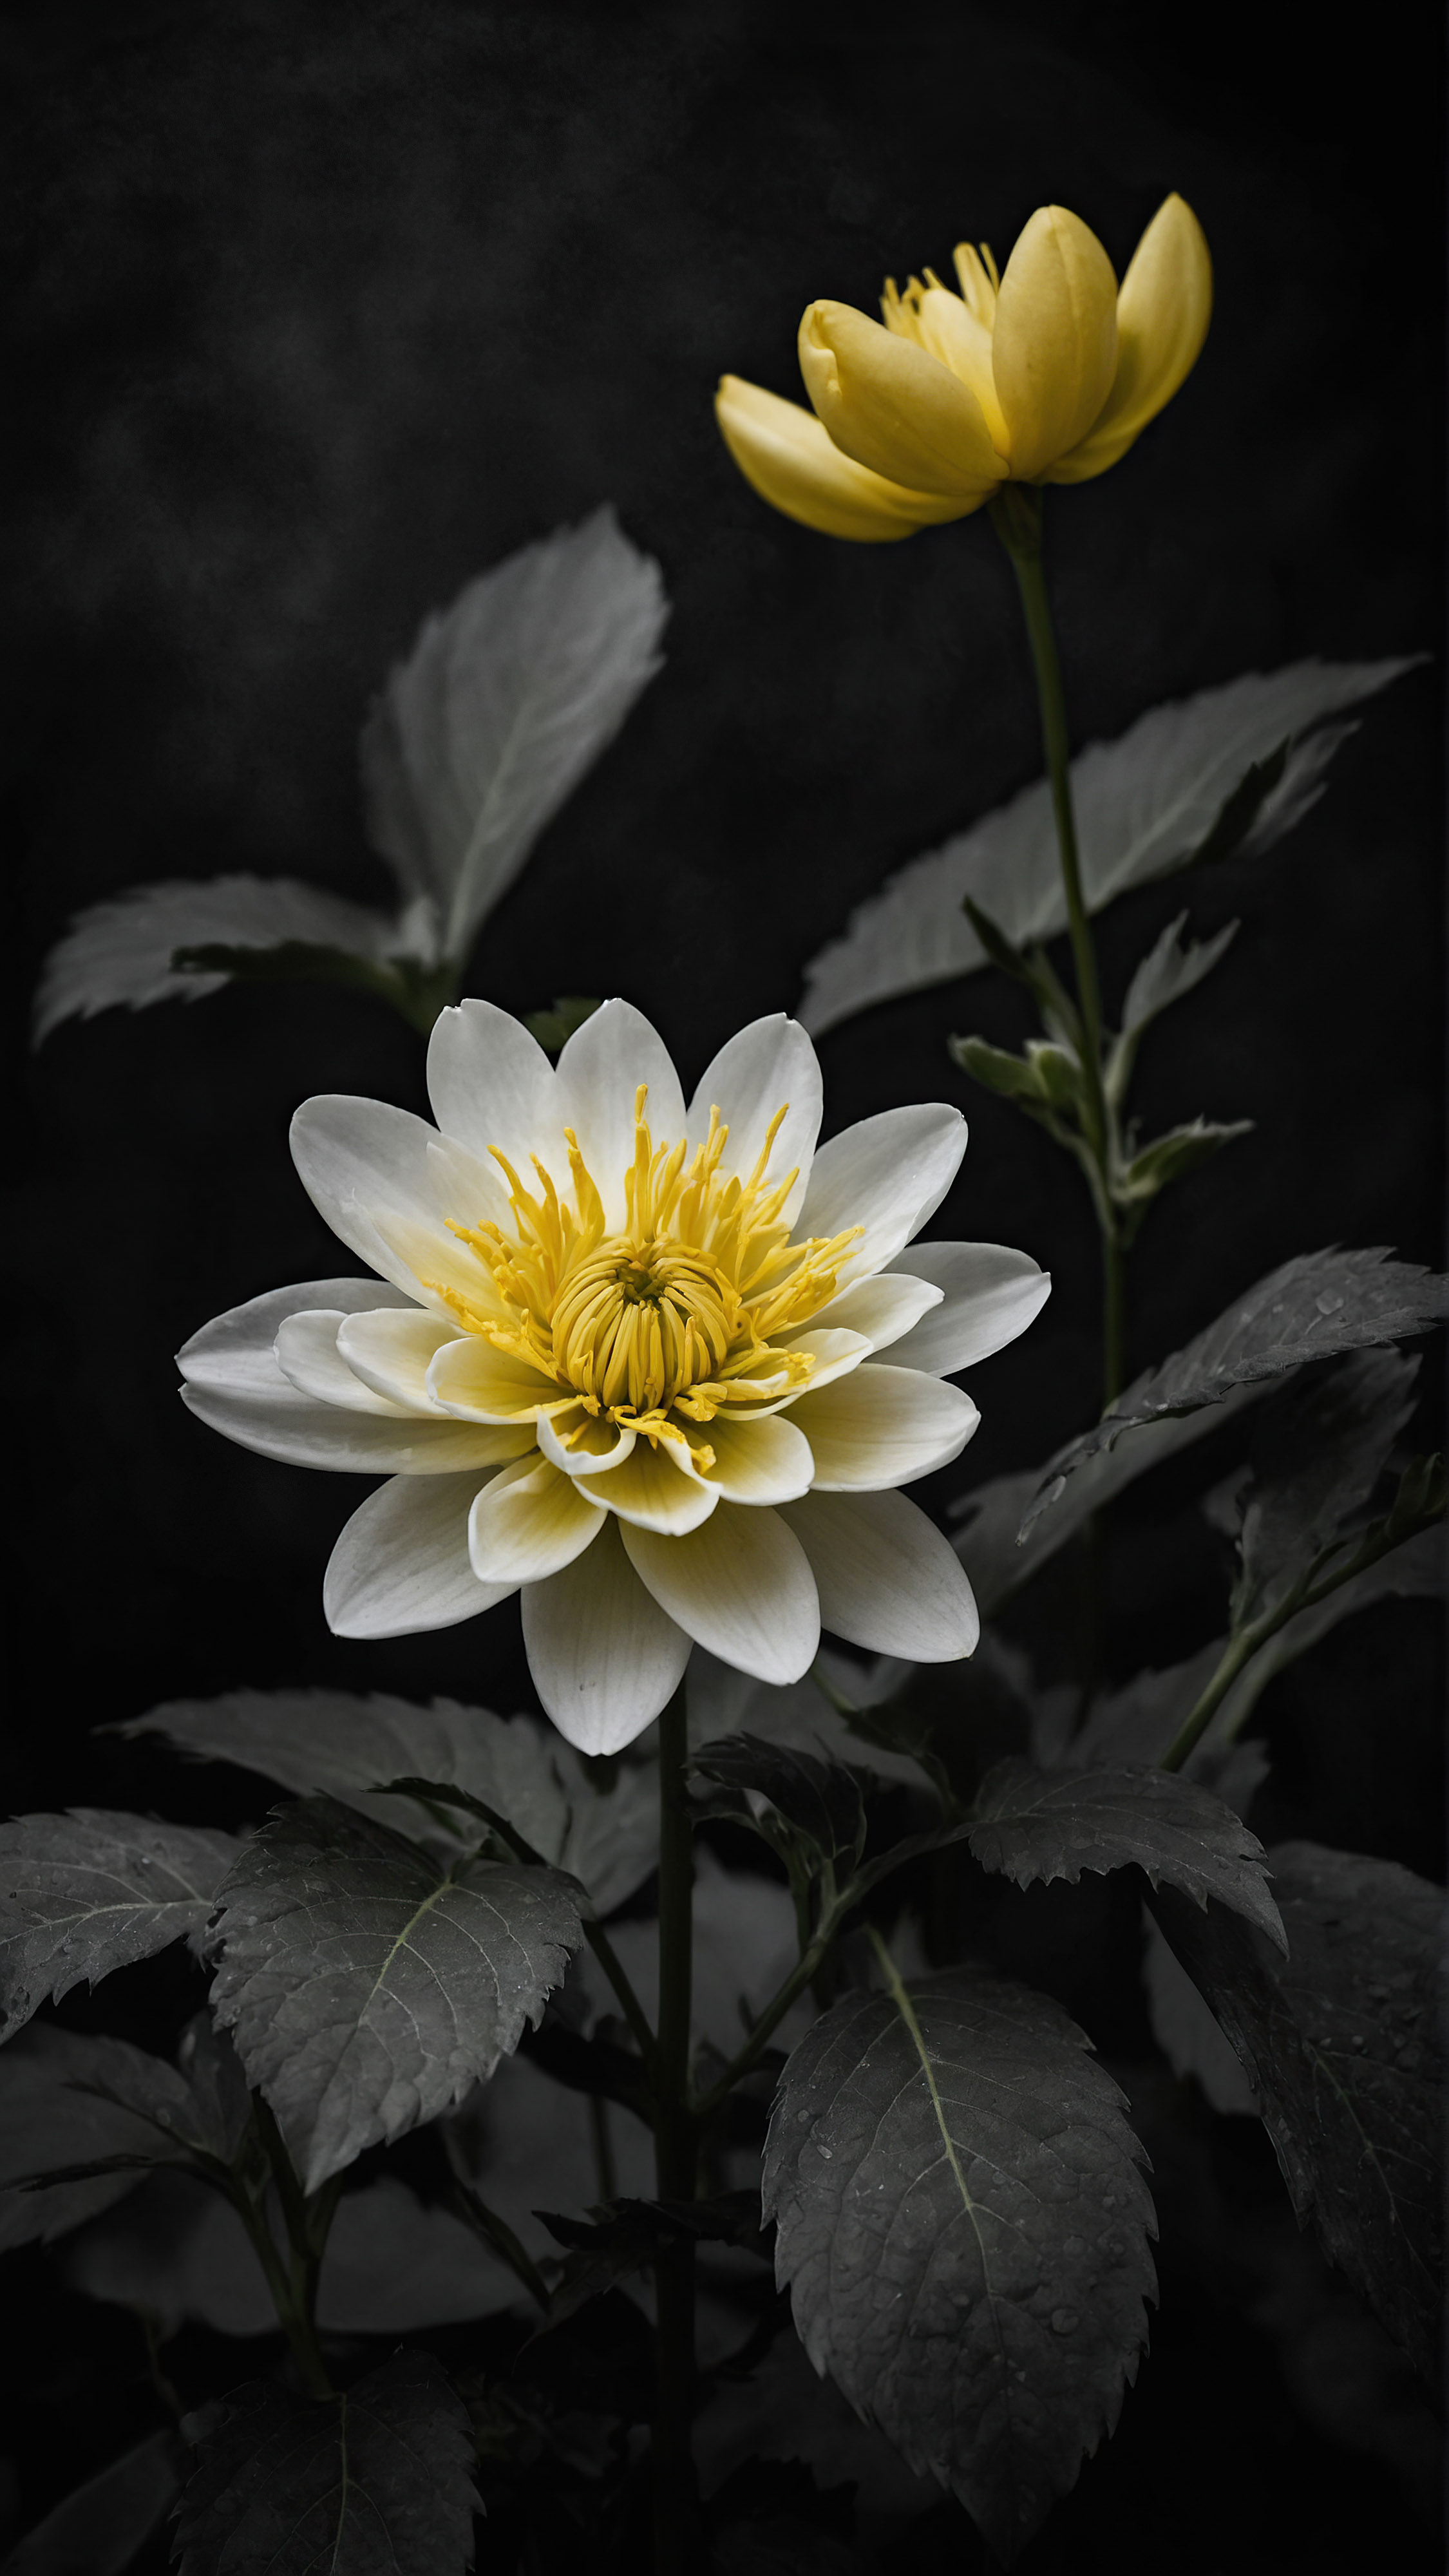 Admirez la beauté délicate avec un fond d'écran mignon noir pour iPhone, mettant en valeur une fleur en fleurs avec des pétales délicats jaunes et blancs, magnifiquement détaillés sur un fond sombre.